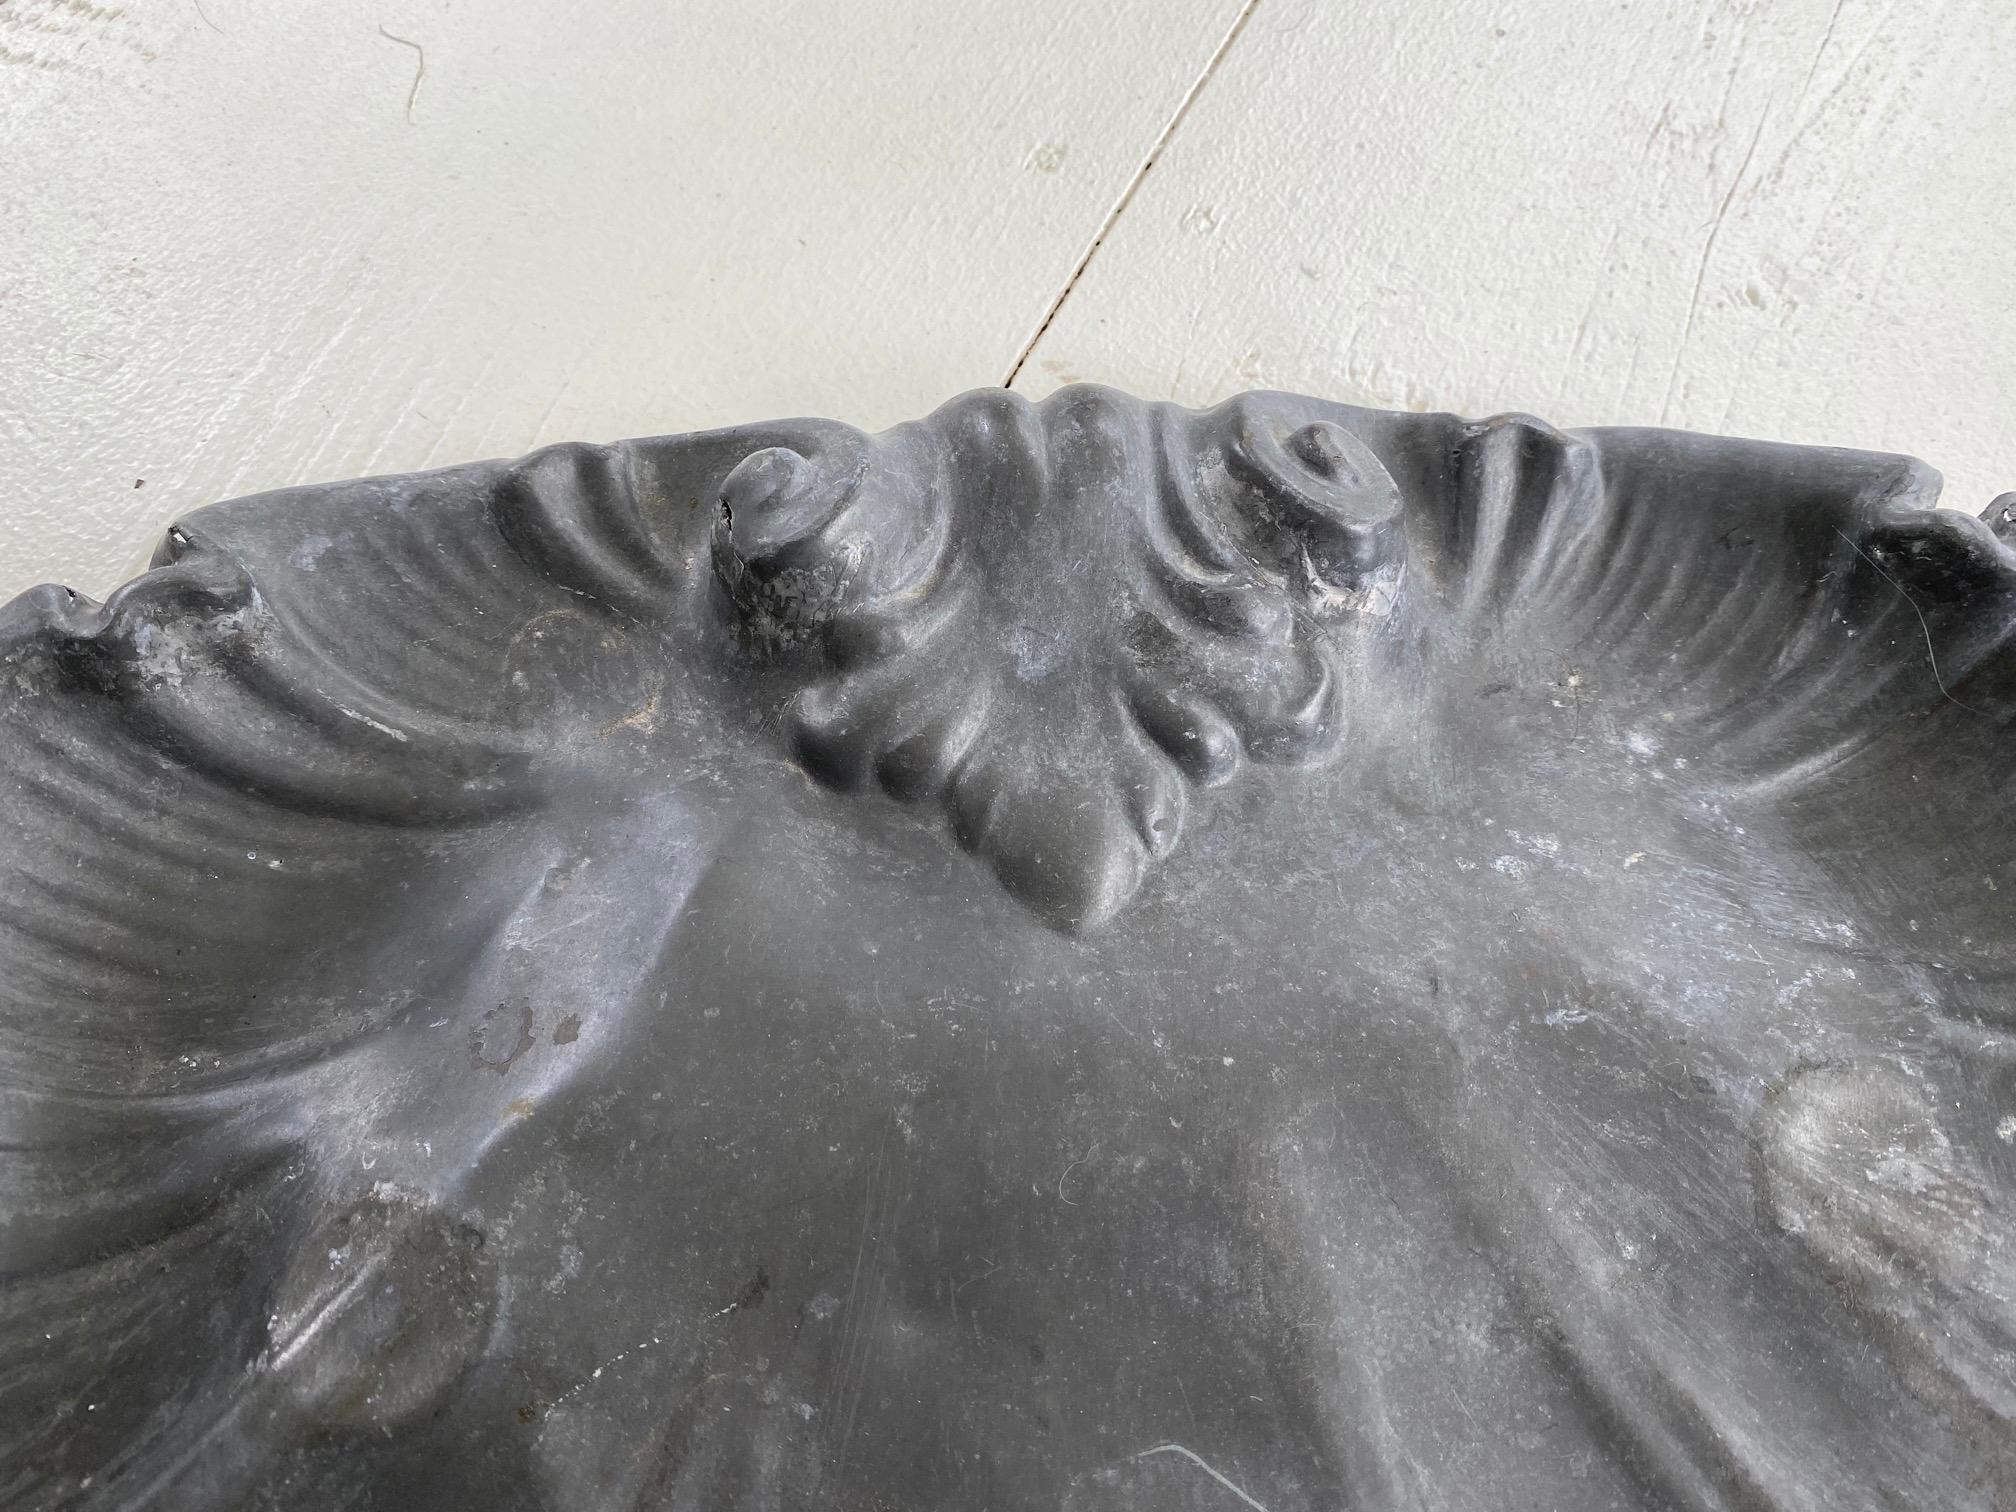 Ungewöhnliche rustikale Französisch antiken Metall Muschel Platte ist aus Metall mit Bleifarbe Beschichtung, eine wunderbare Alterspatina. Das Stück wurde möglicherweise in einem kommerziellen Rahmen an einer Bushaltestelle oder einem Gasthaus am